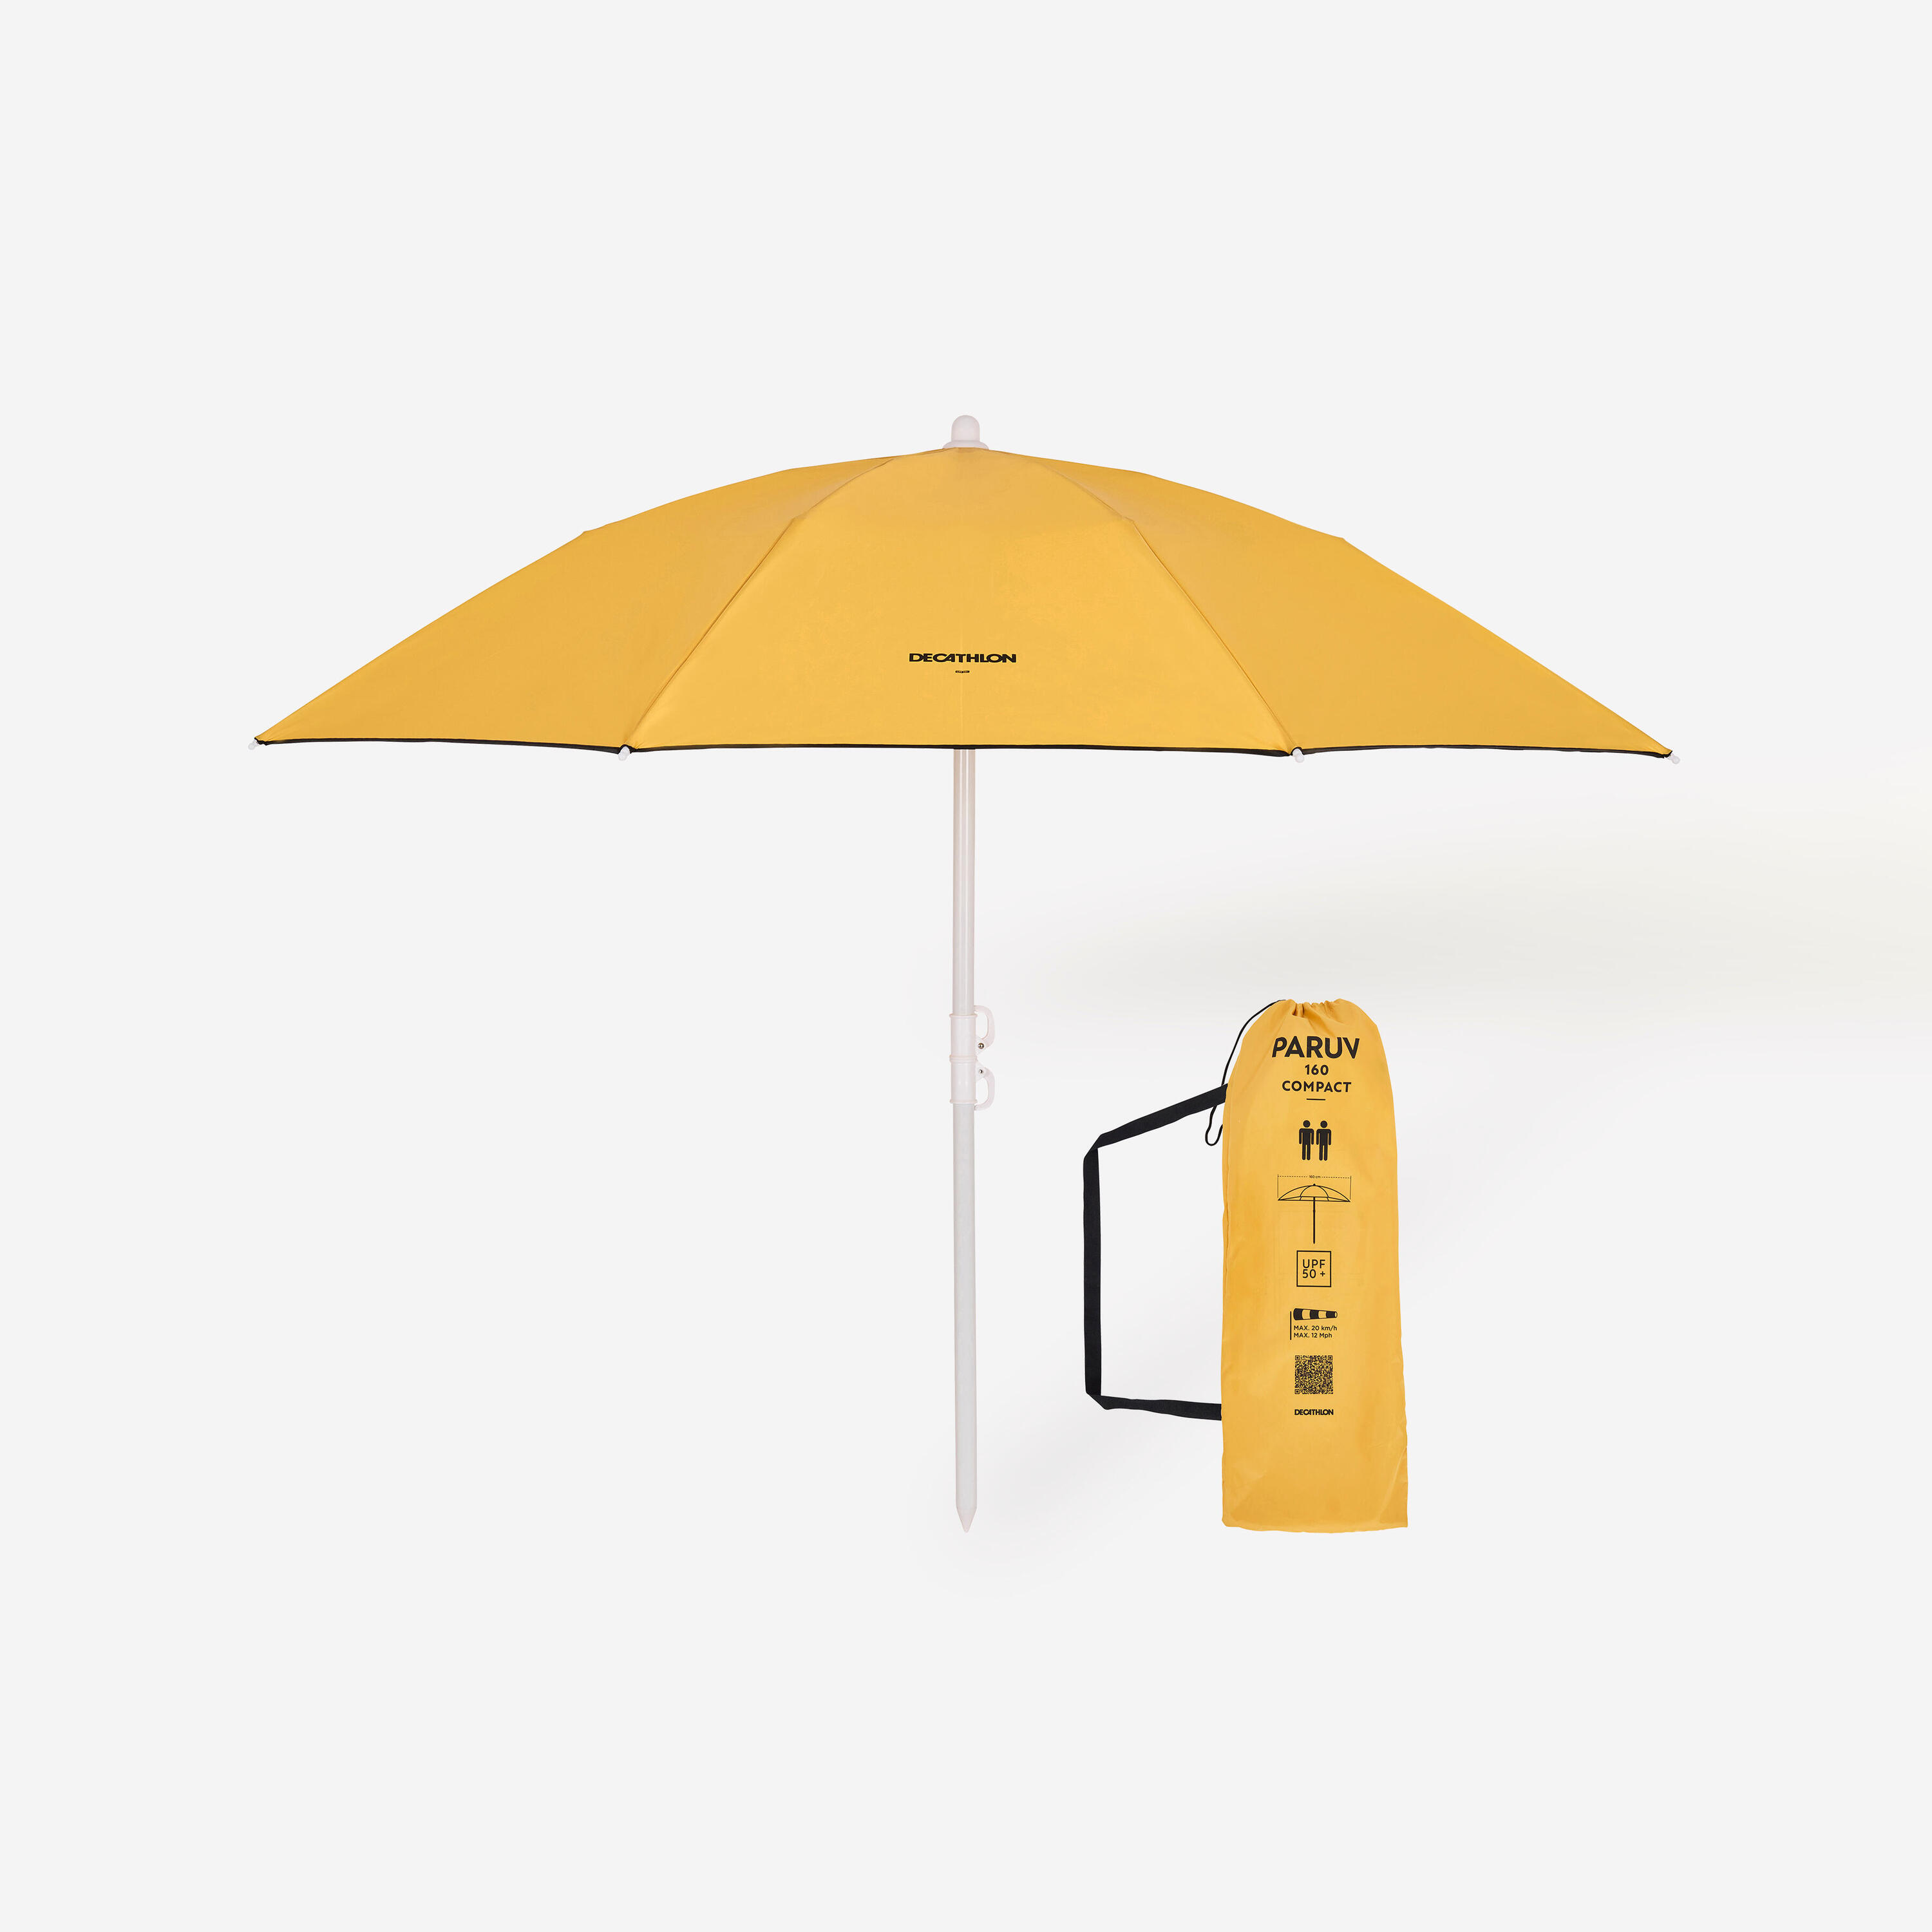 Compact beach umbrella 2 person UPF 50+ - Paruv 160 yellow ochre 1/8